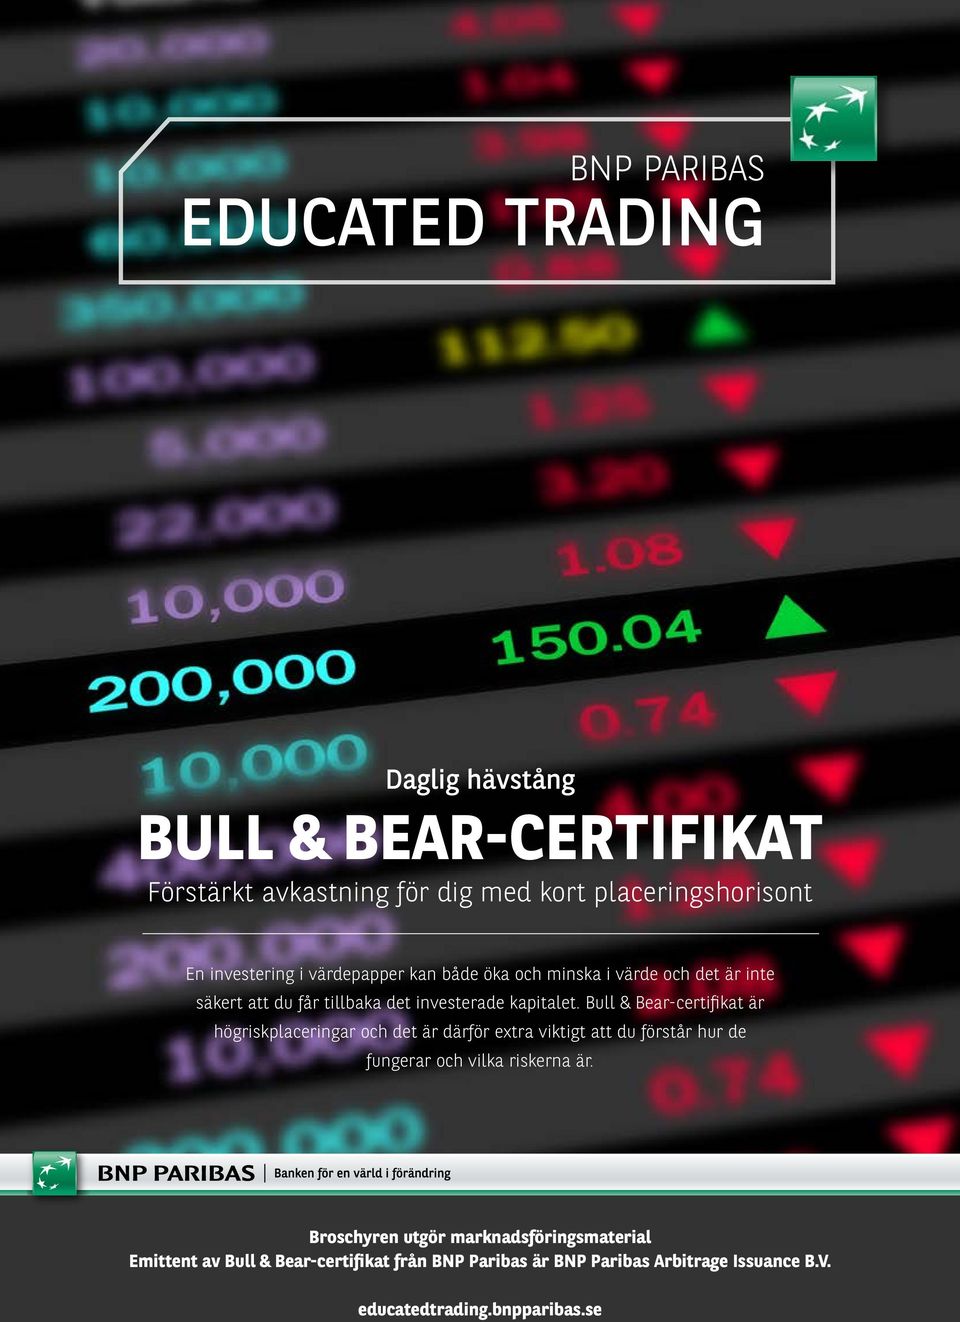 Bull & Bear-certifikat är högriskplaceringar och det är därför extra viktigt att du förstår hur de fungerar och vilka riskerna är.